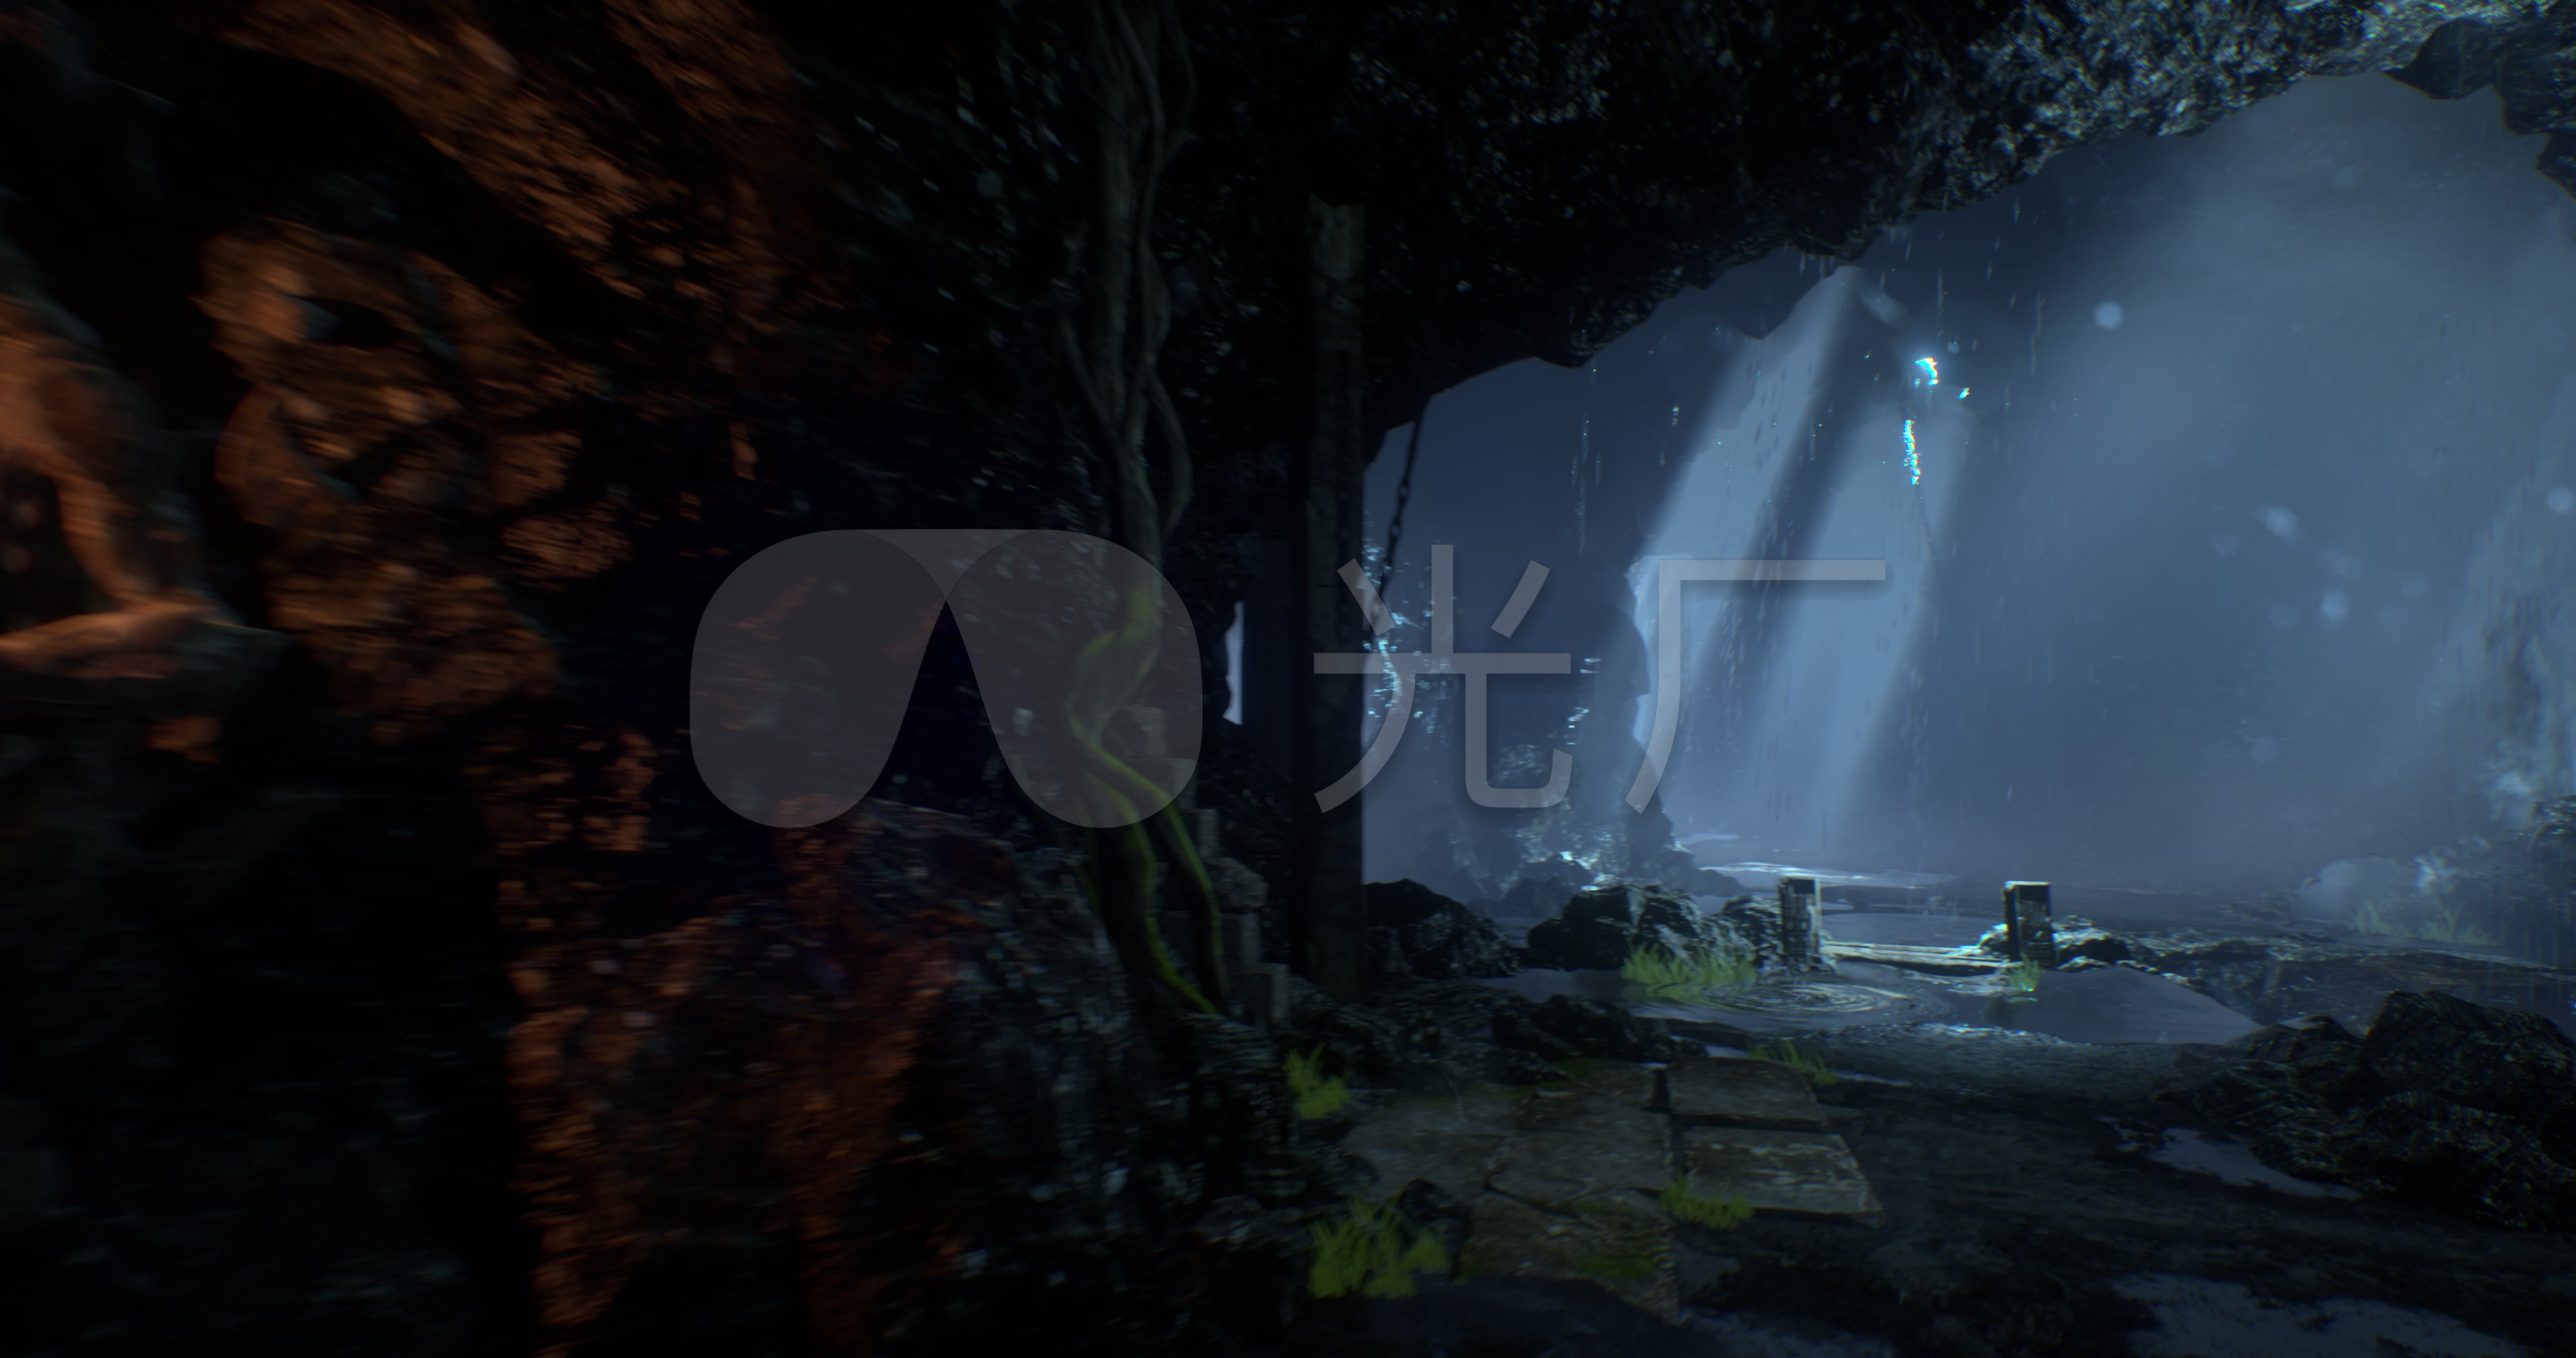 奇趣洞穴冒险之旅 横版过关游戏《洞穴》最新截图_3DM单机